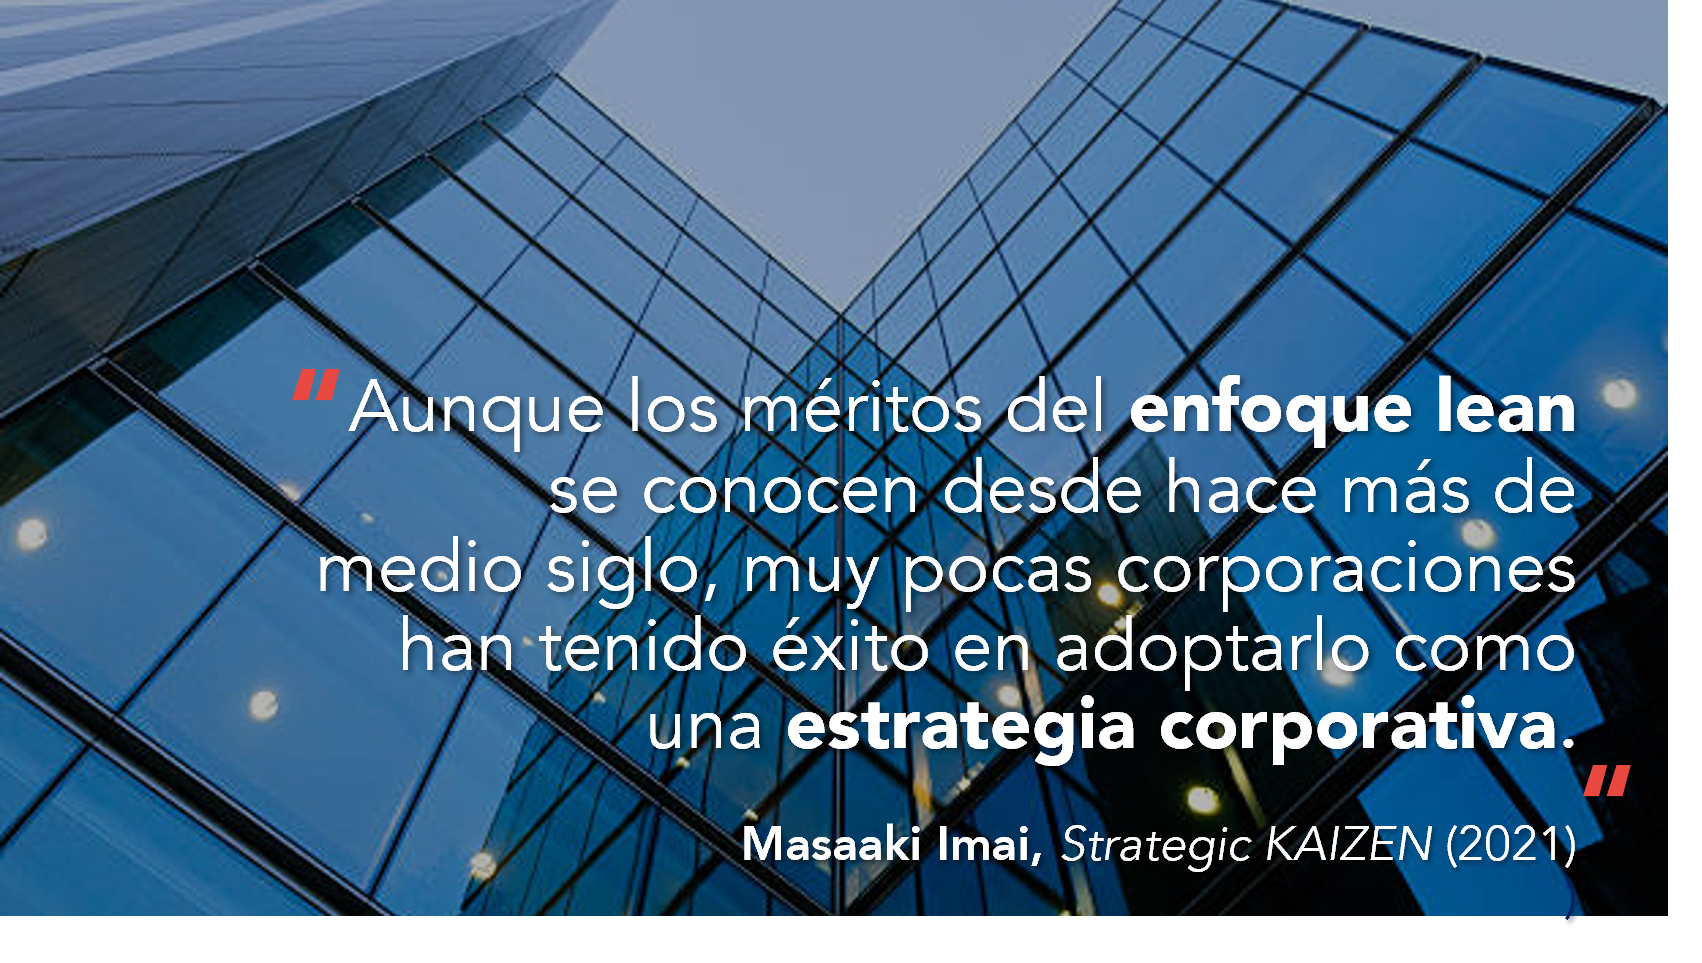 Alt: Cita de Masaaki Imai: "Aunque los méritos del enfoque Lean se conocen desde hace más de medio siglo, muy pocas corporaciones han tenido éxito en adoptarlo como una estrategia corporativa". 